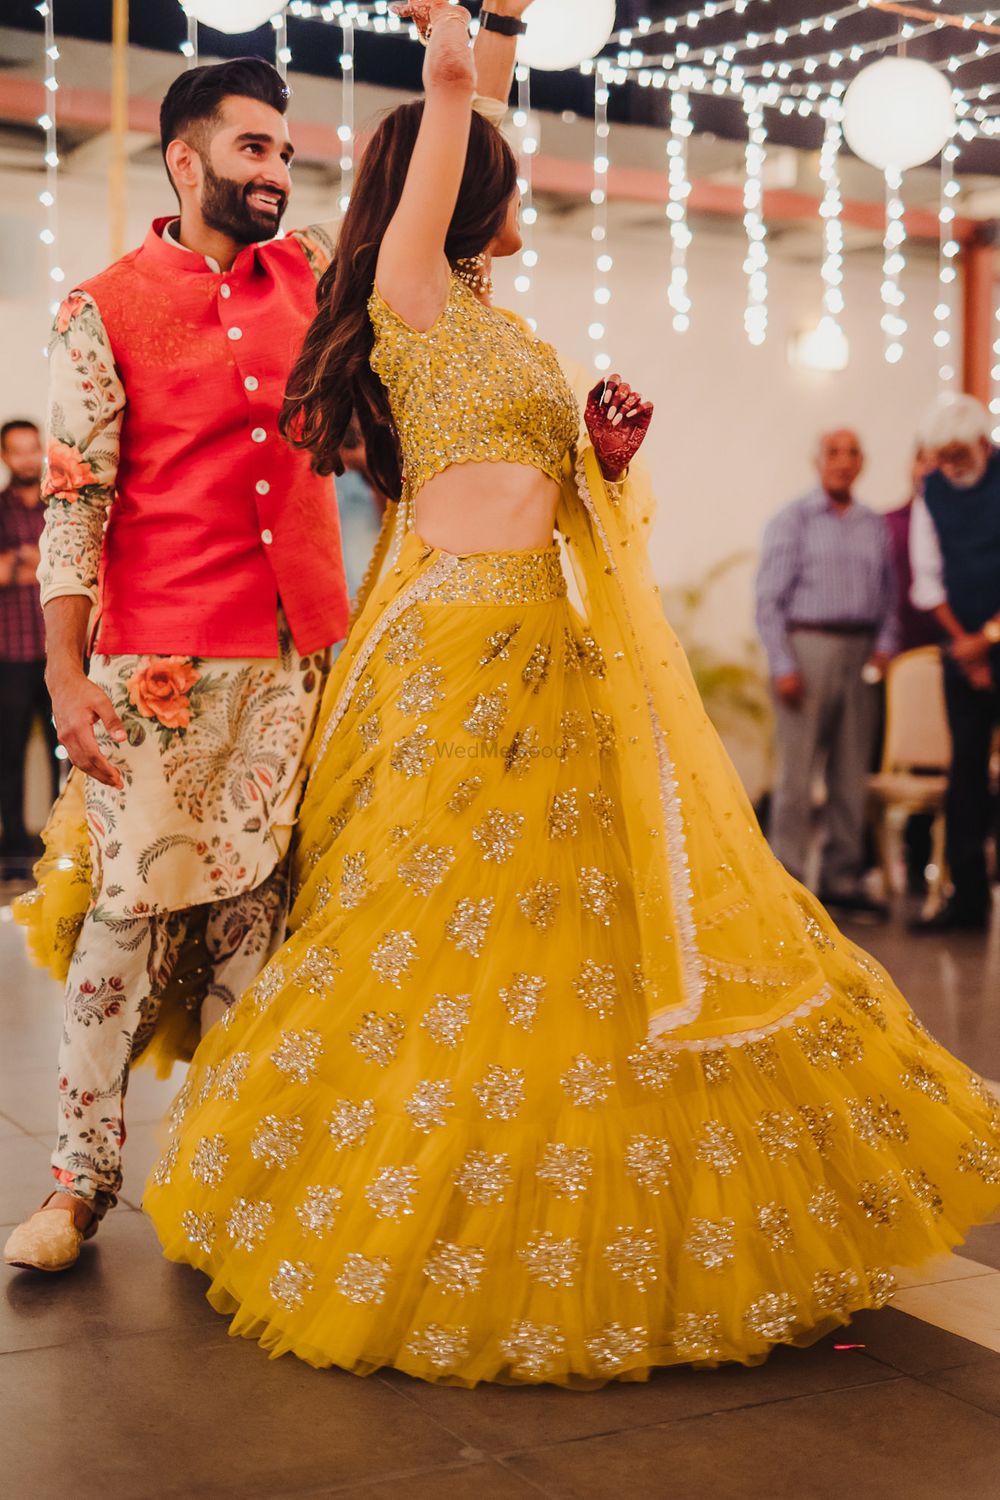 Photo of Dancing couple shot on sangeet with mustard yellow lehenga